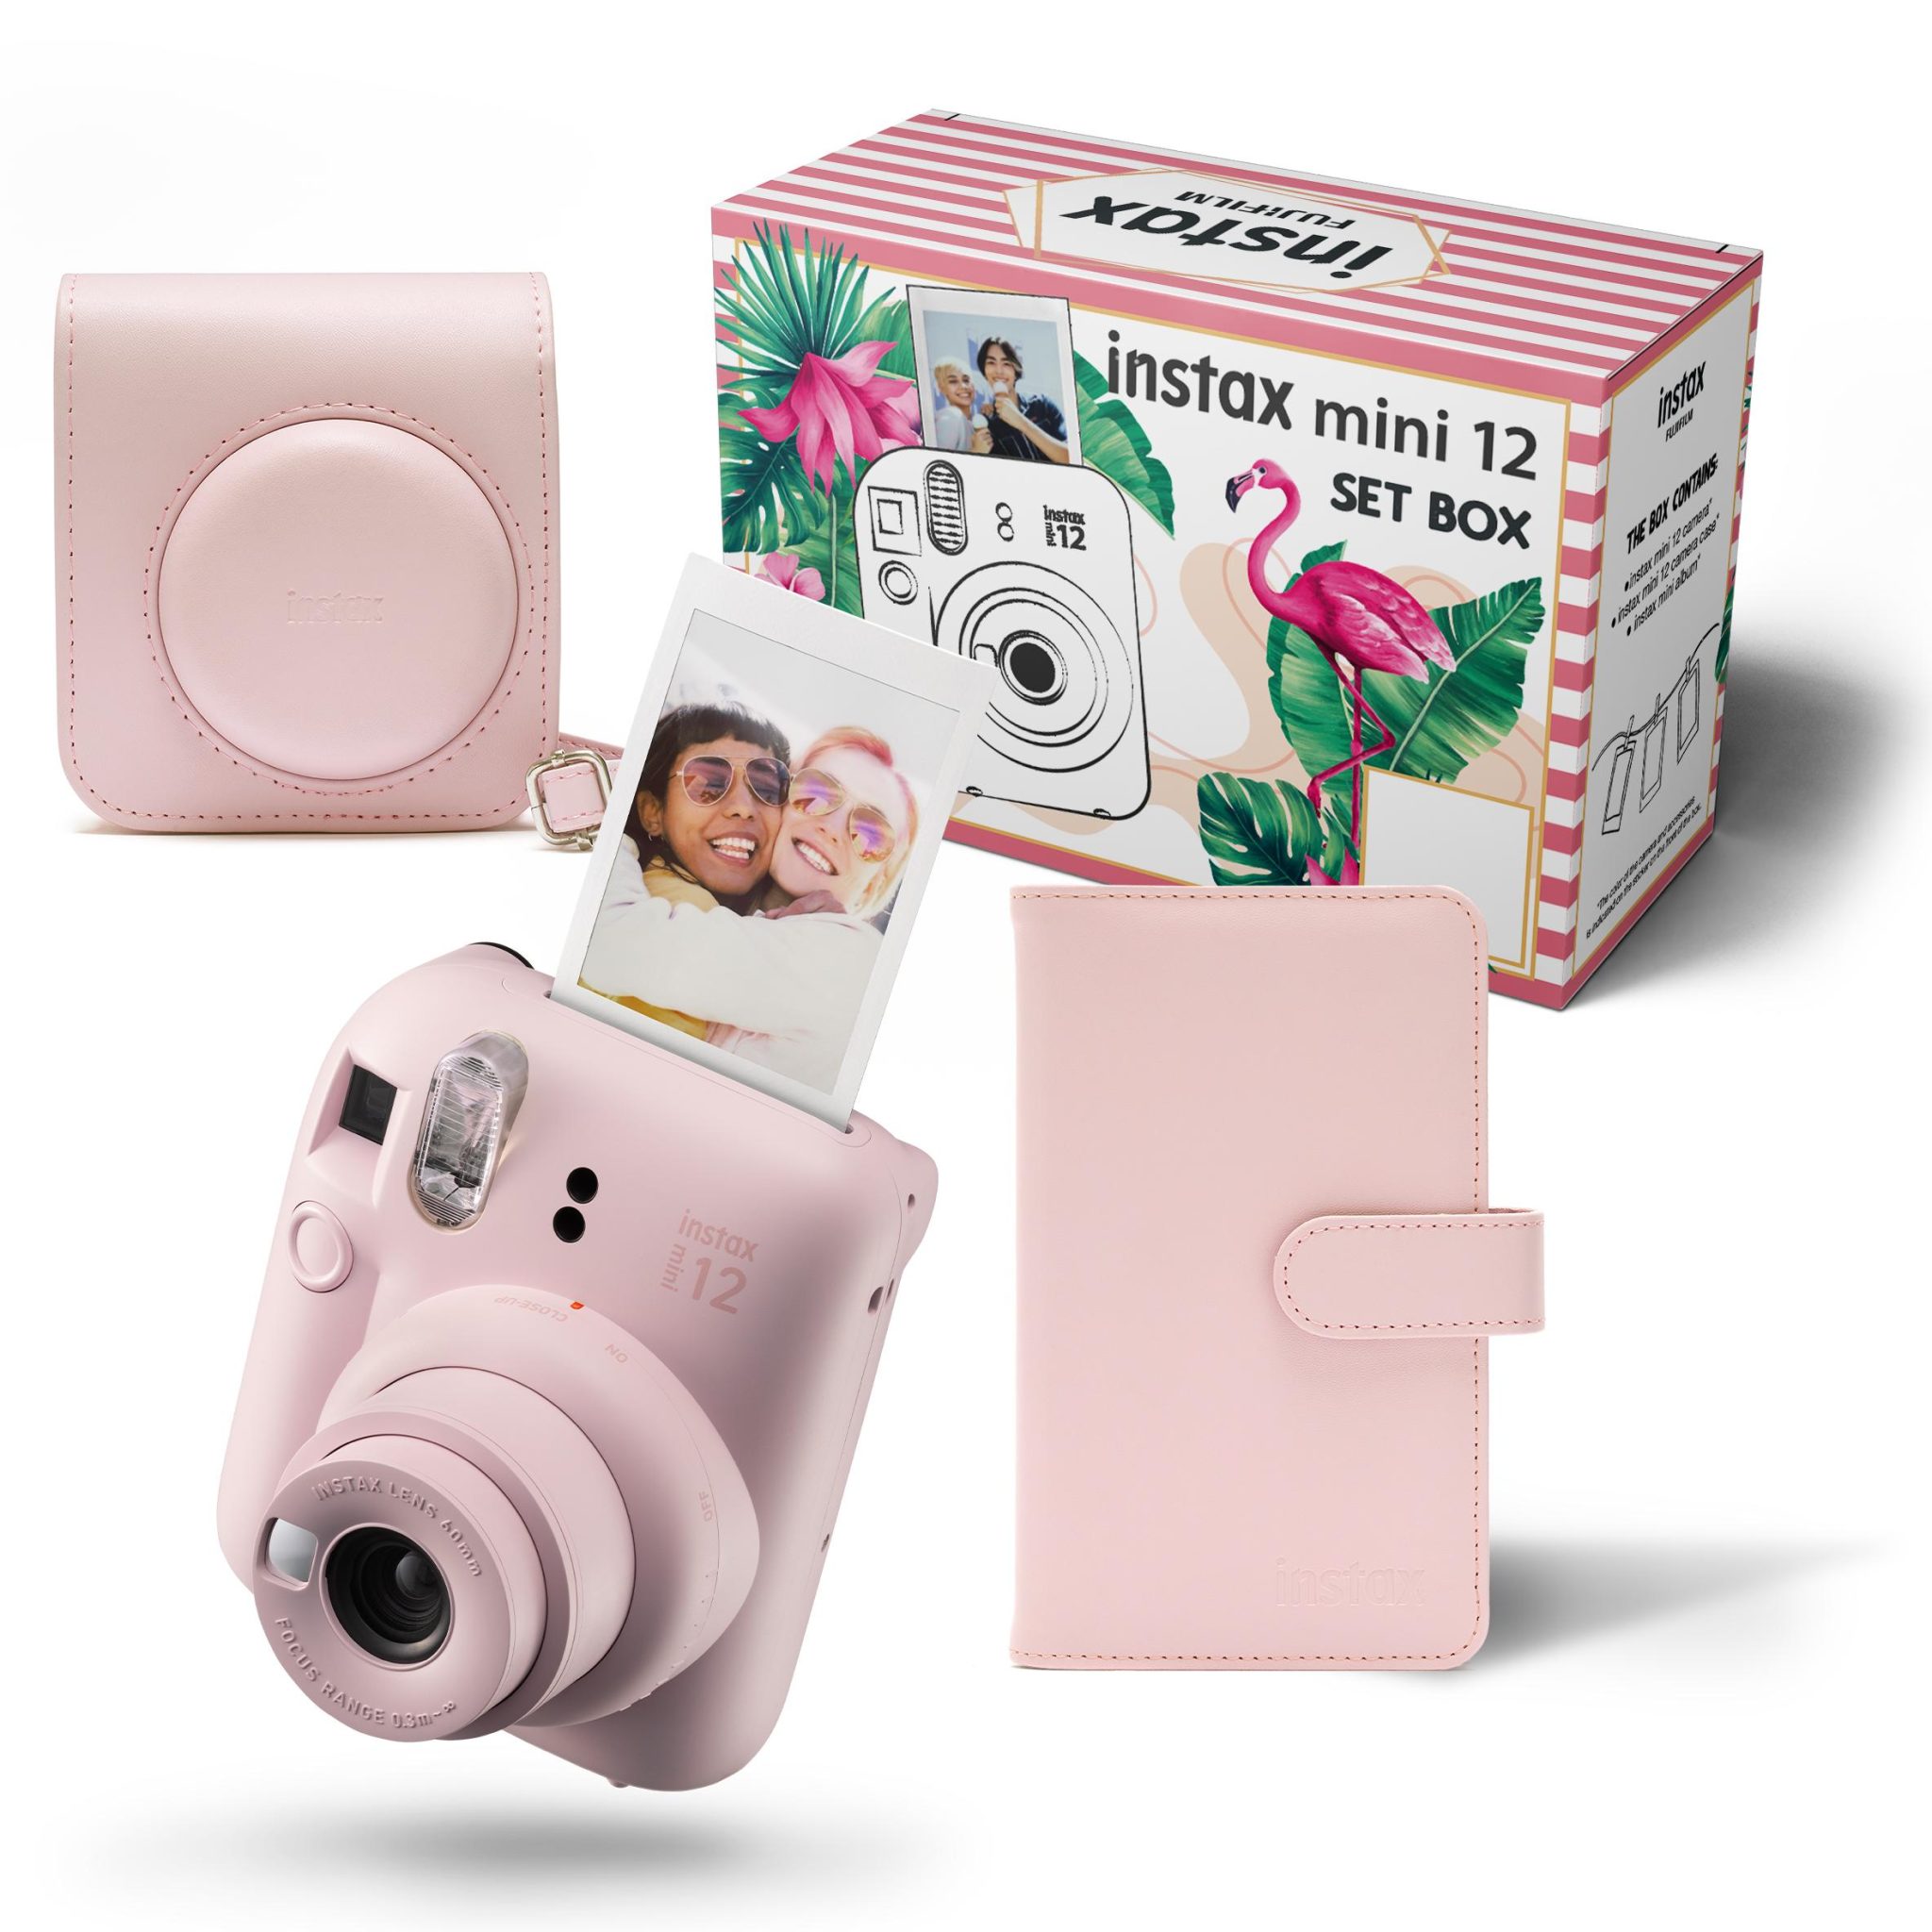 najlepsze pomysły na prezent komunijny - Aparat Fujifilm Instax mini 12